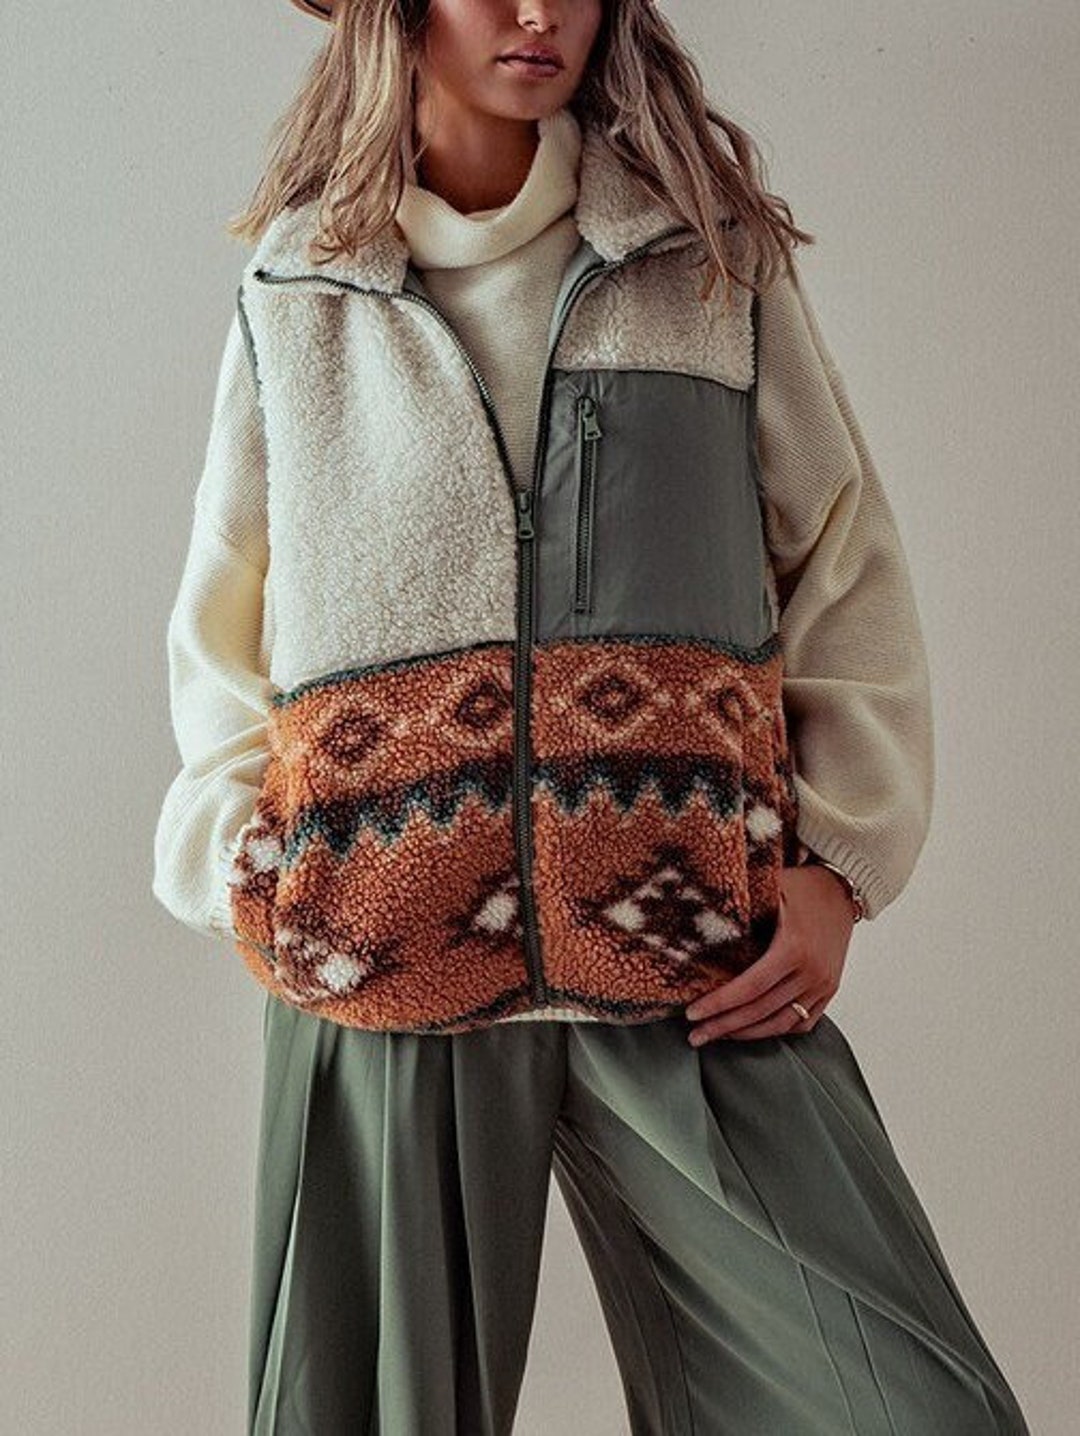 Women Slim Fit Cozy and Comfort Zip up Sherpa-lined Fleece